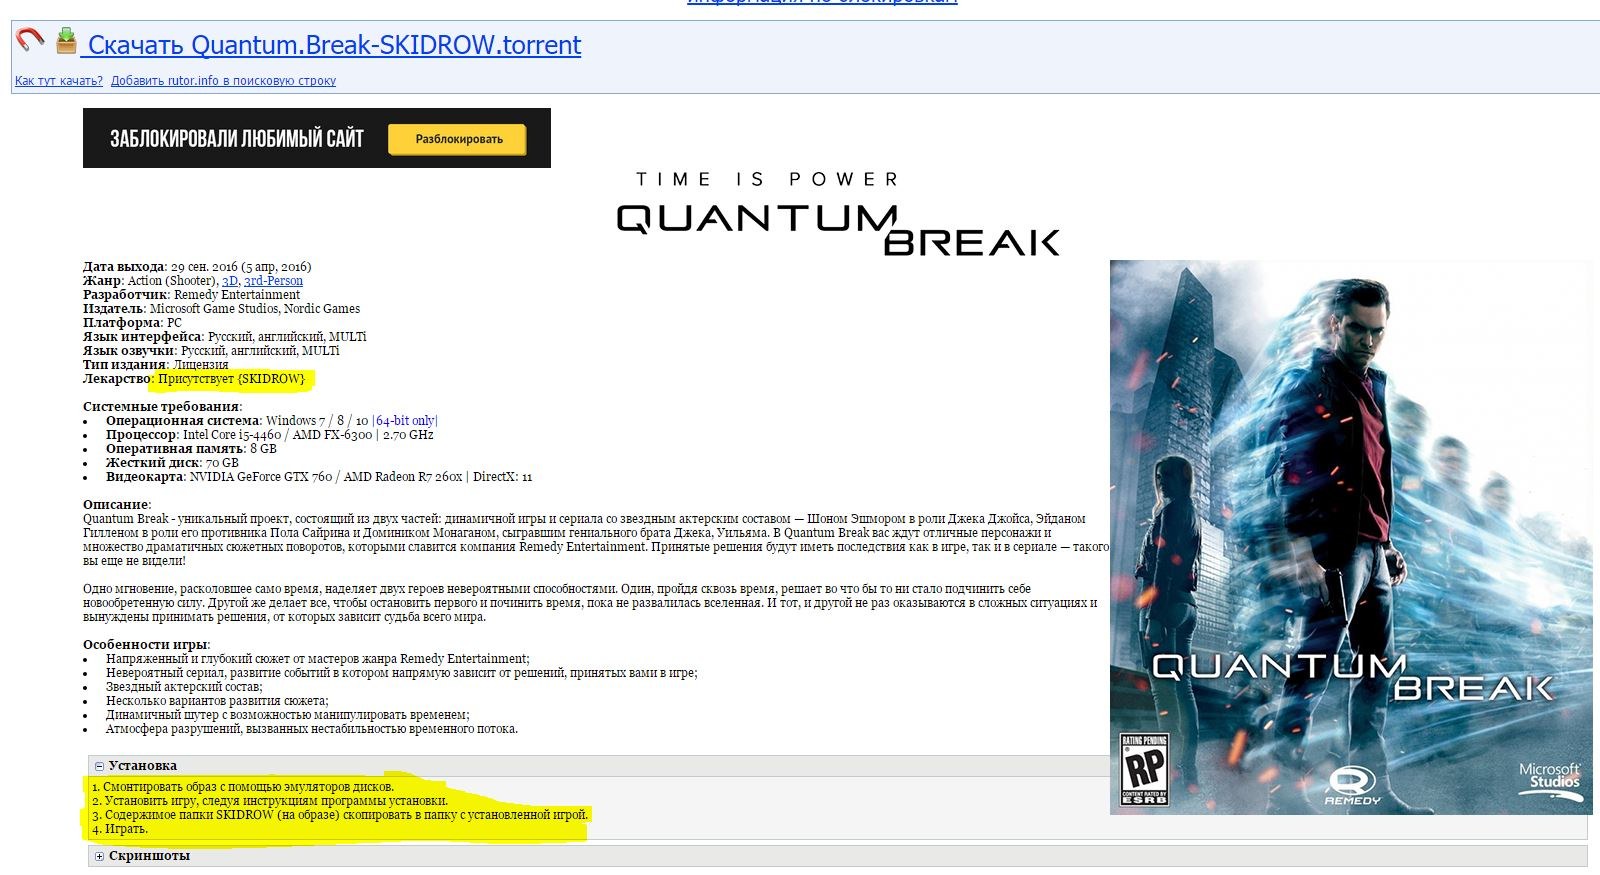 Руторг новая зеркало 2020. Quantum Break системные требования. Квантум брейк системные требования. Quantum Break системные требования на PC. Remedy Entertainment стенд.